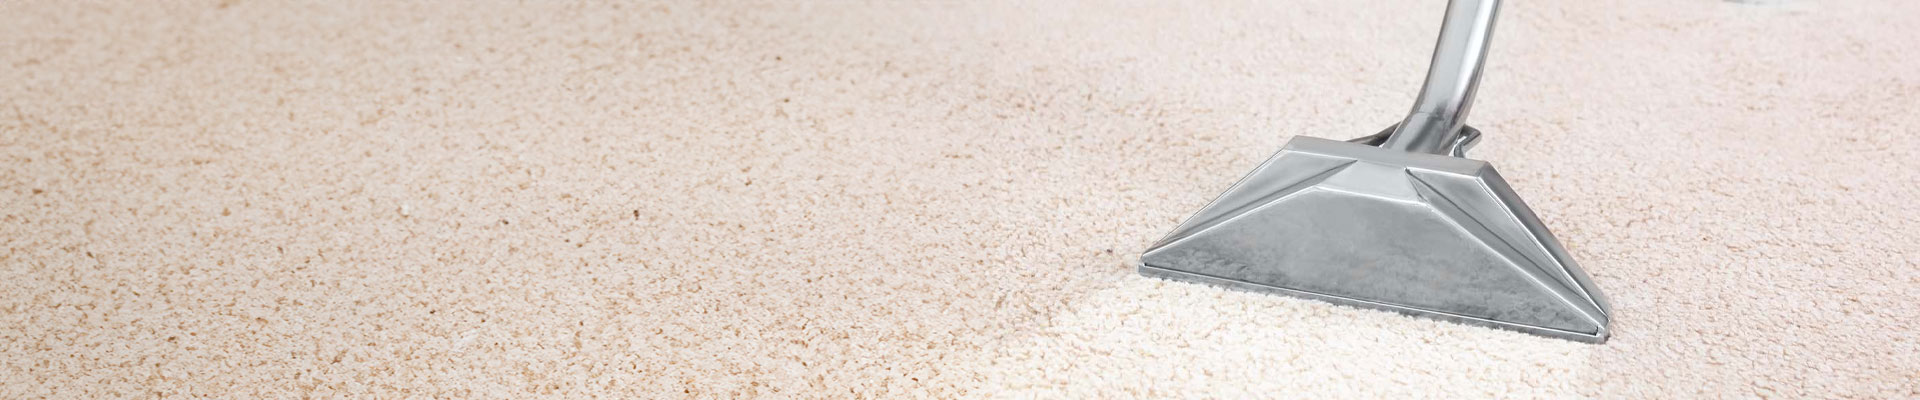 Carpet & Floor Cleaning